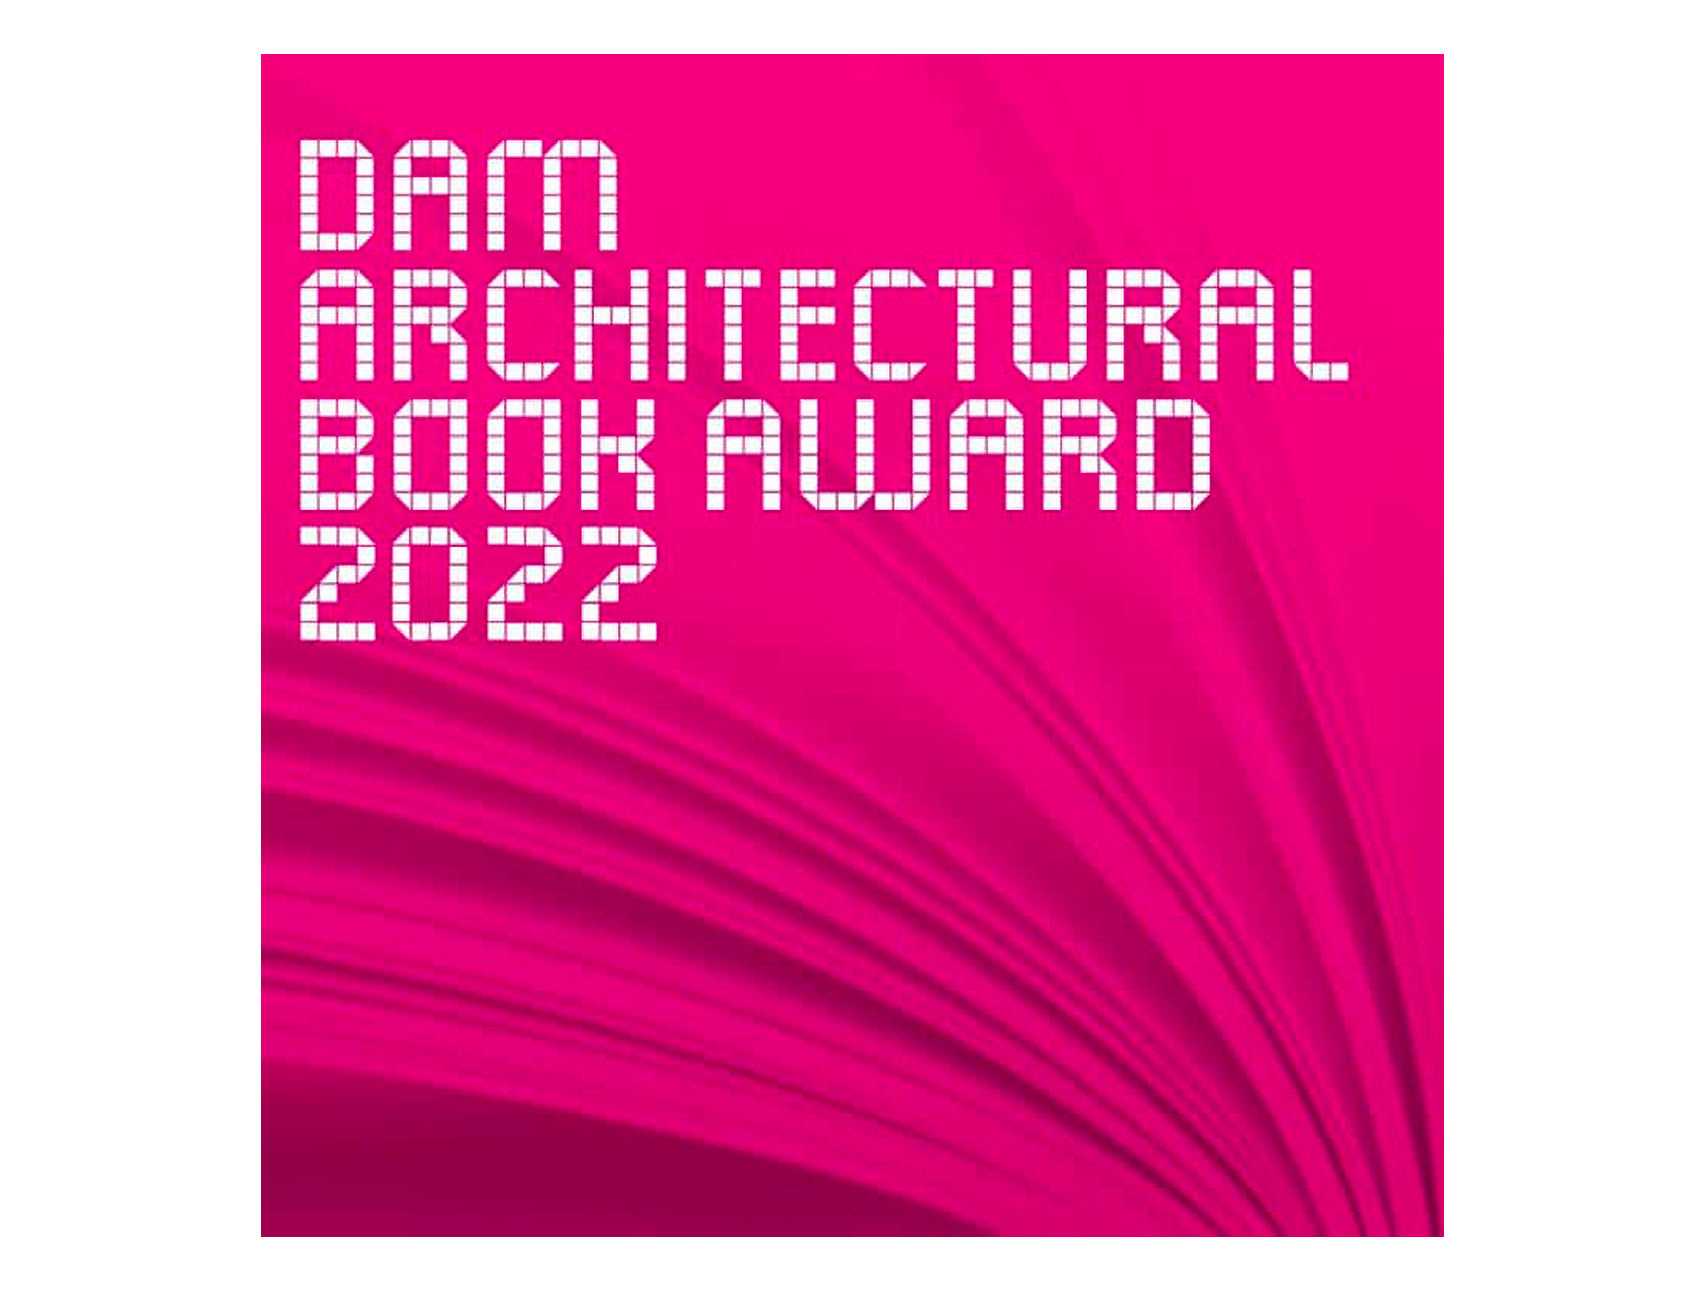 Erneute Auszeichnung für die Publikation Auf Linie – DAM Architectural Book Award 2022